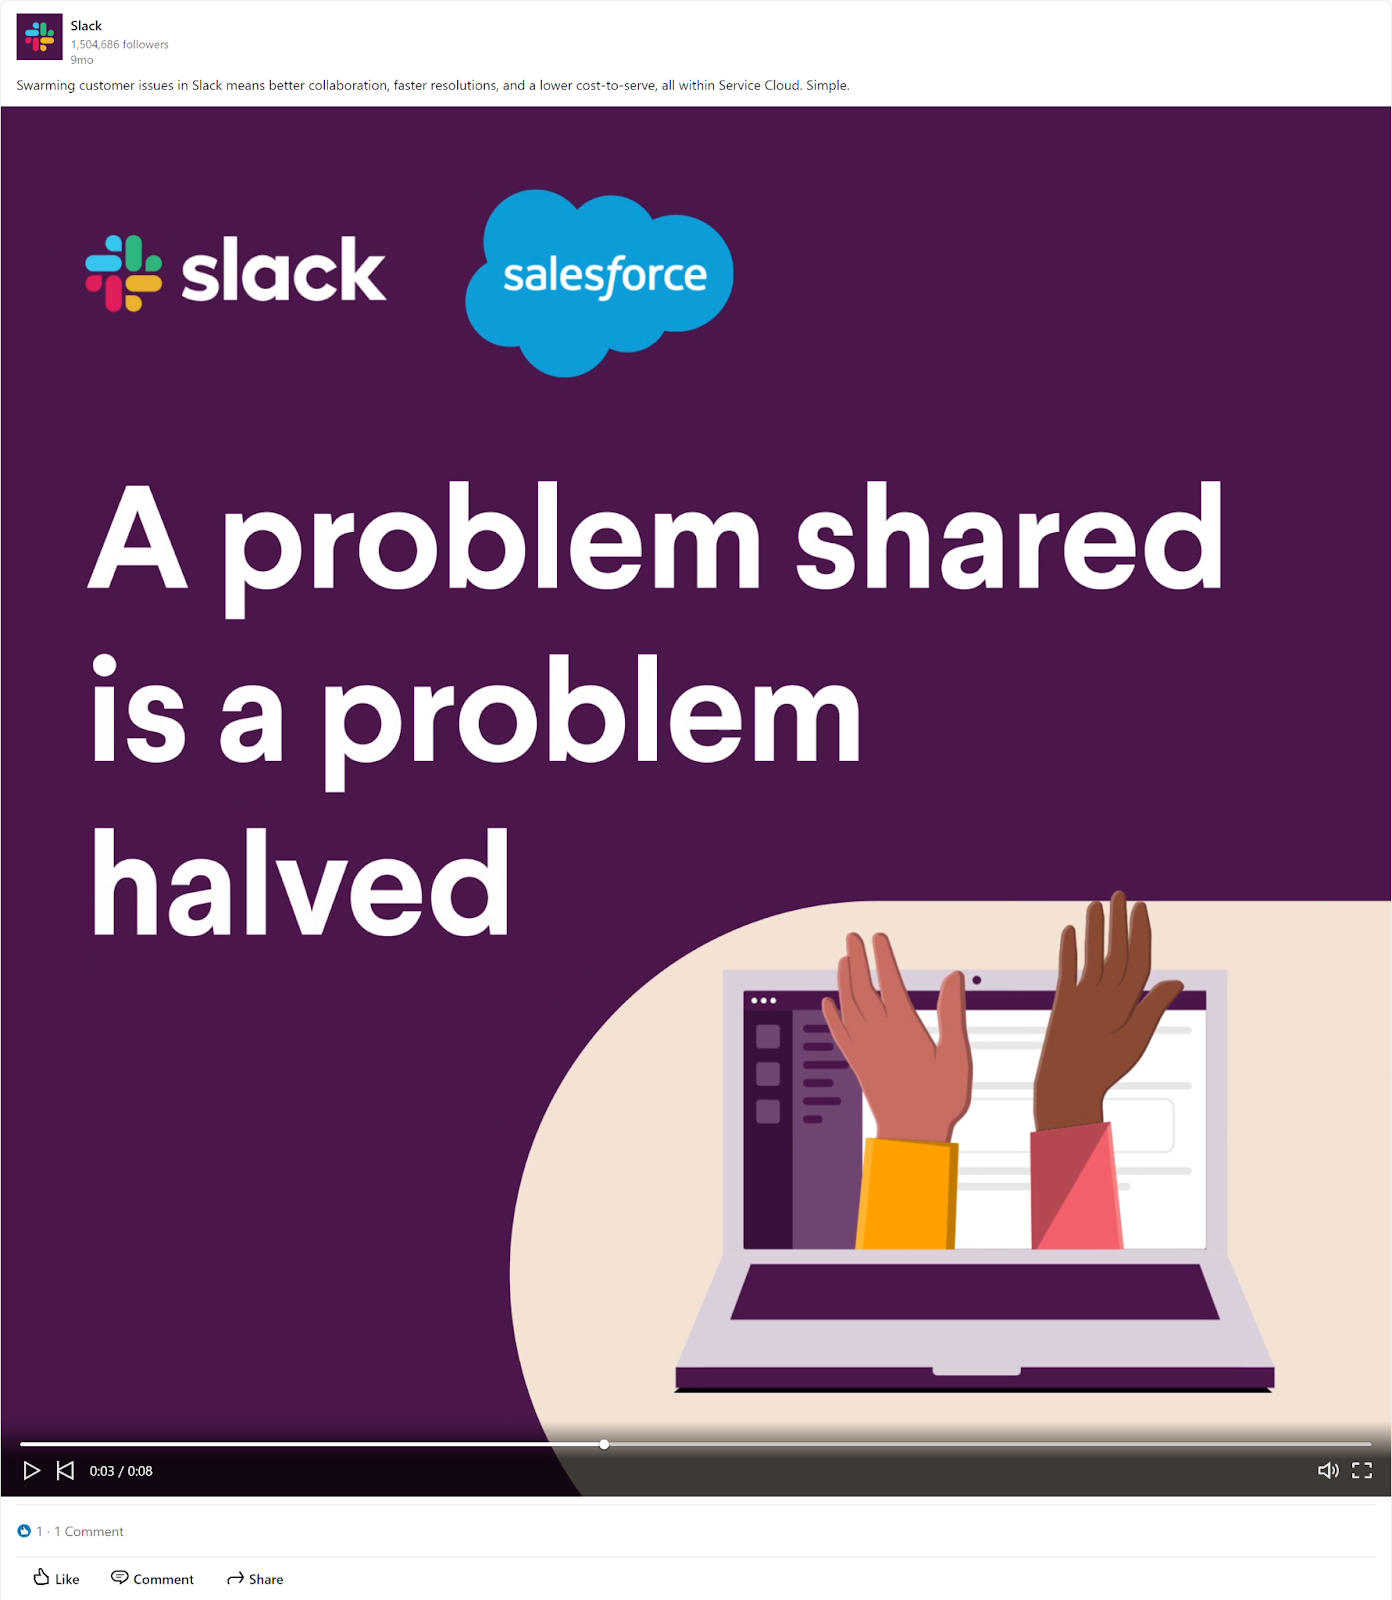 slack linkedin video ad example